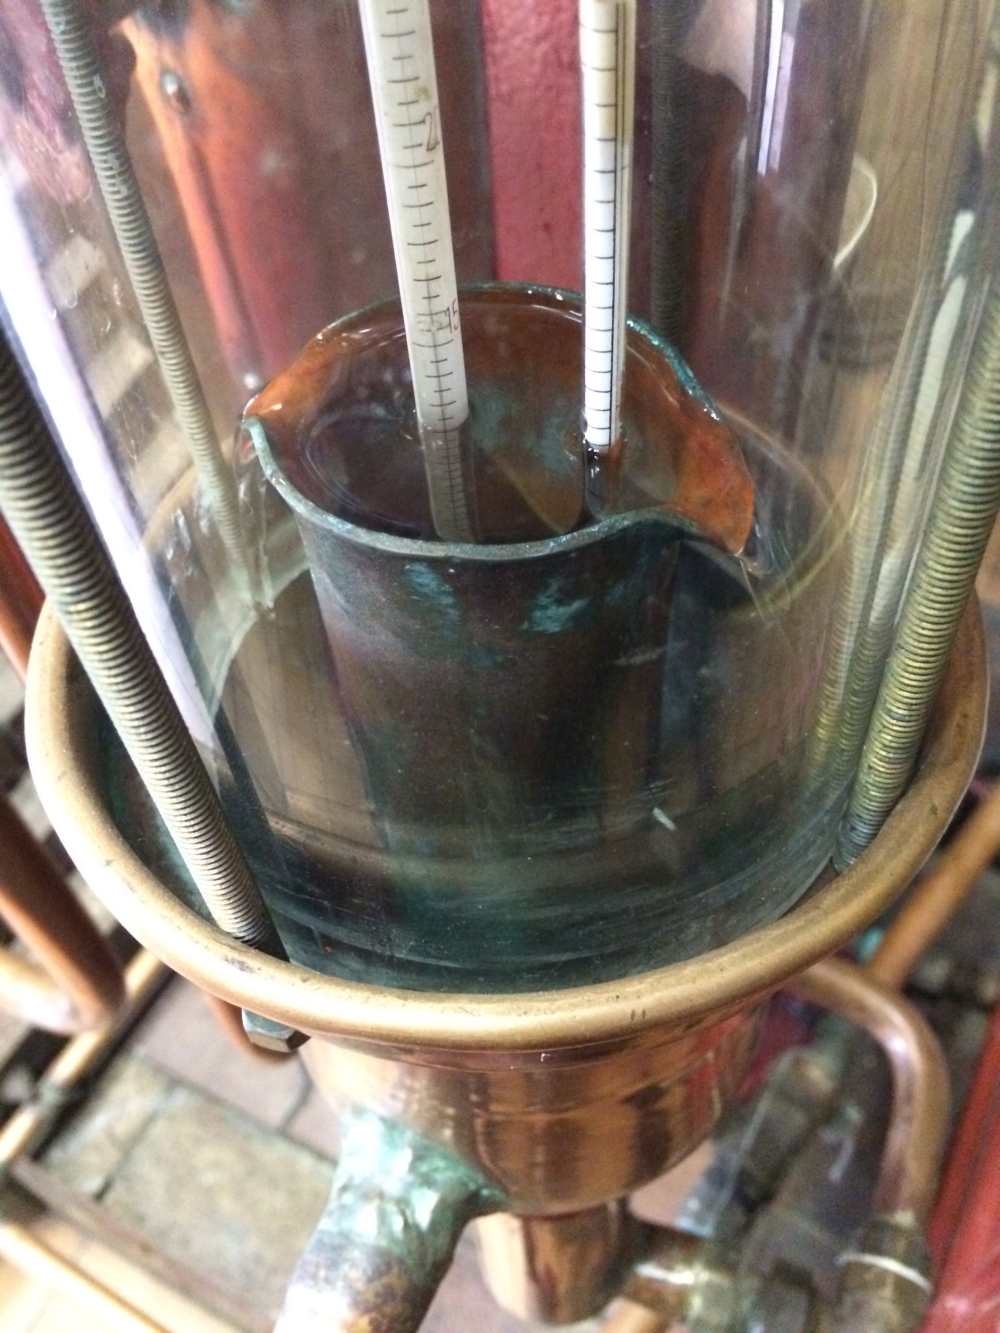 Processus de distillation du cidre pour fabriquer du lambig breton à la distillerie du Plessis, au manoir du Kinkiz à Quimper